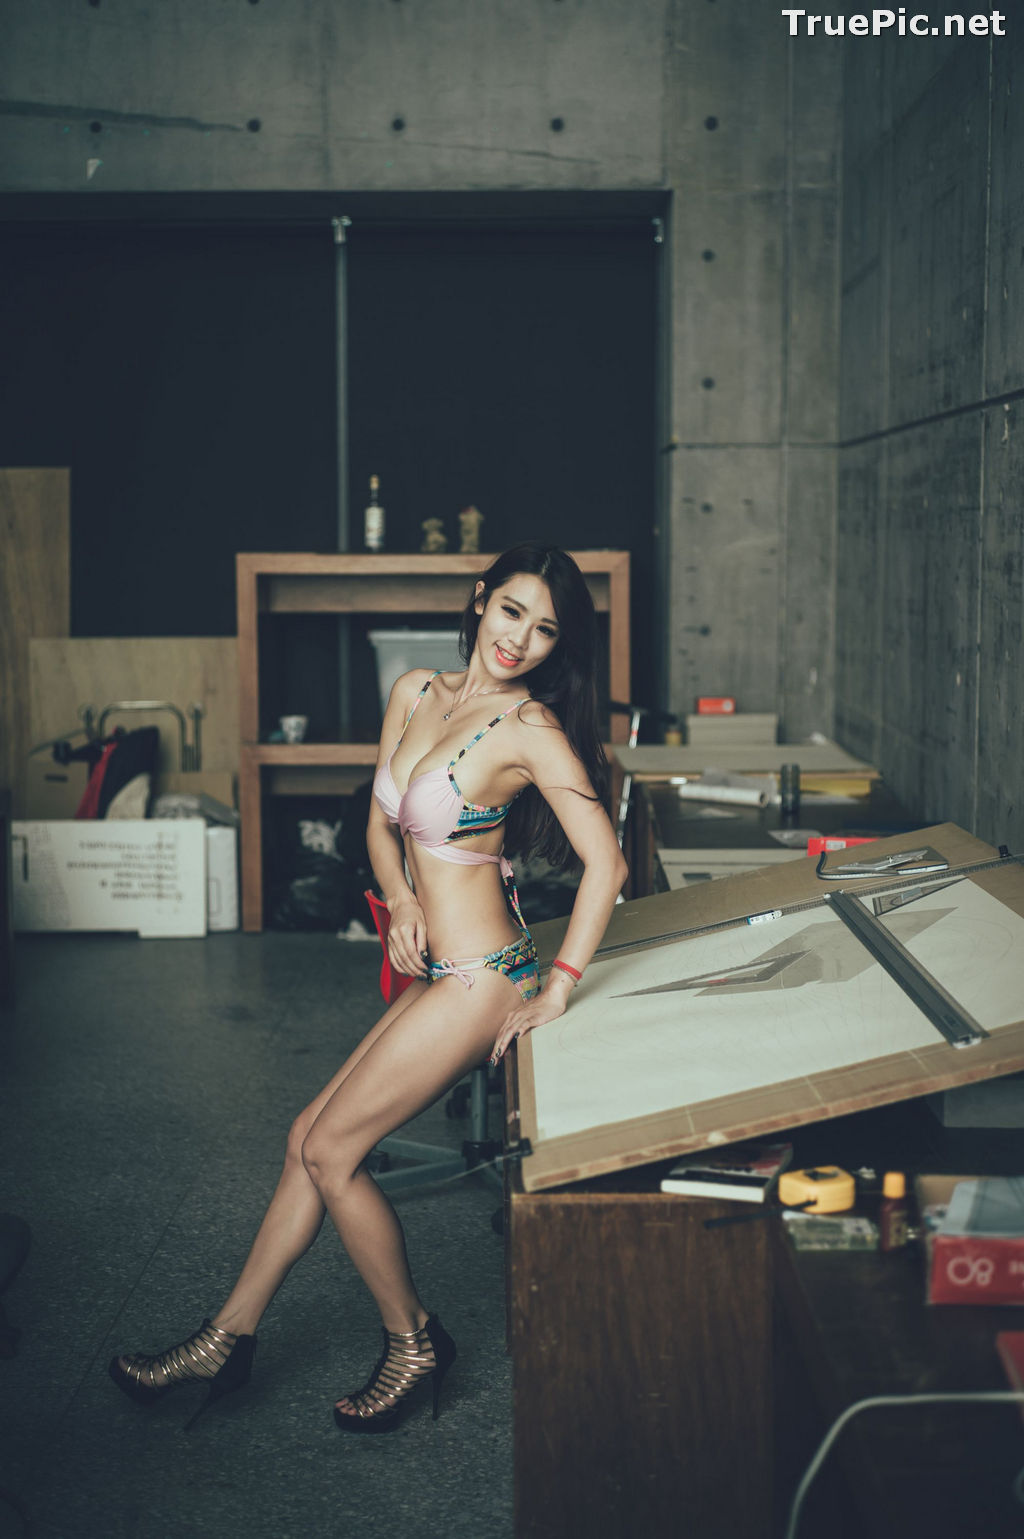 Image Taiwanese Model - 魏曼曼 (Amanda) - Bikini In The Room - TruePic.net - Picture-21